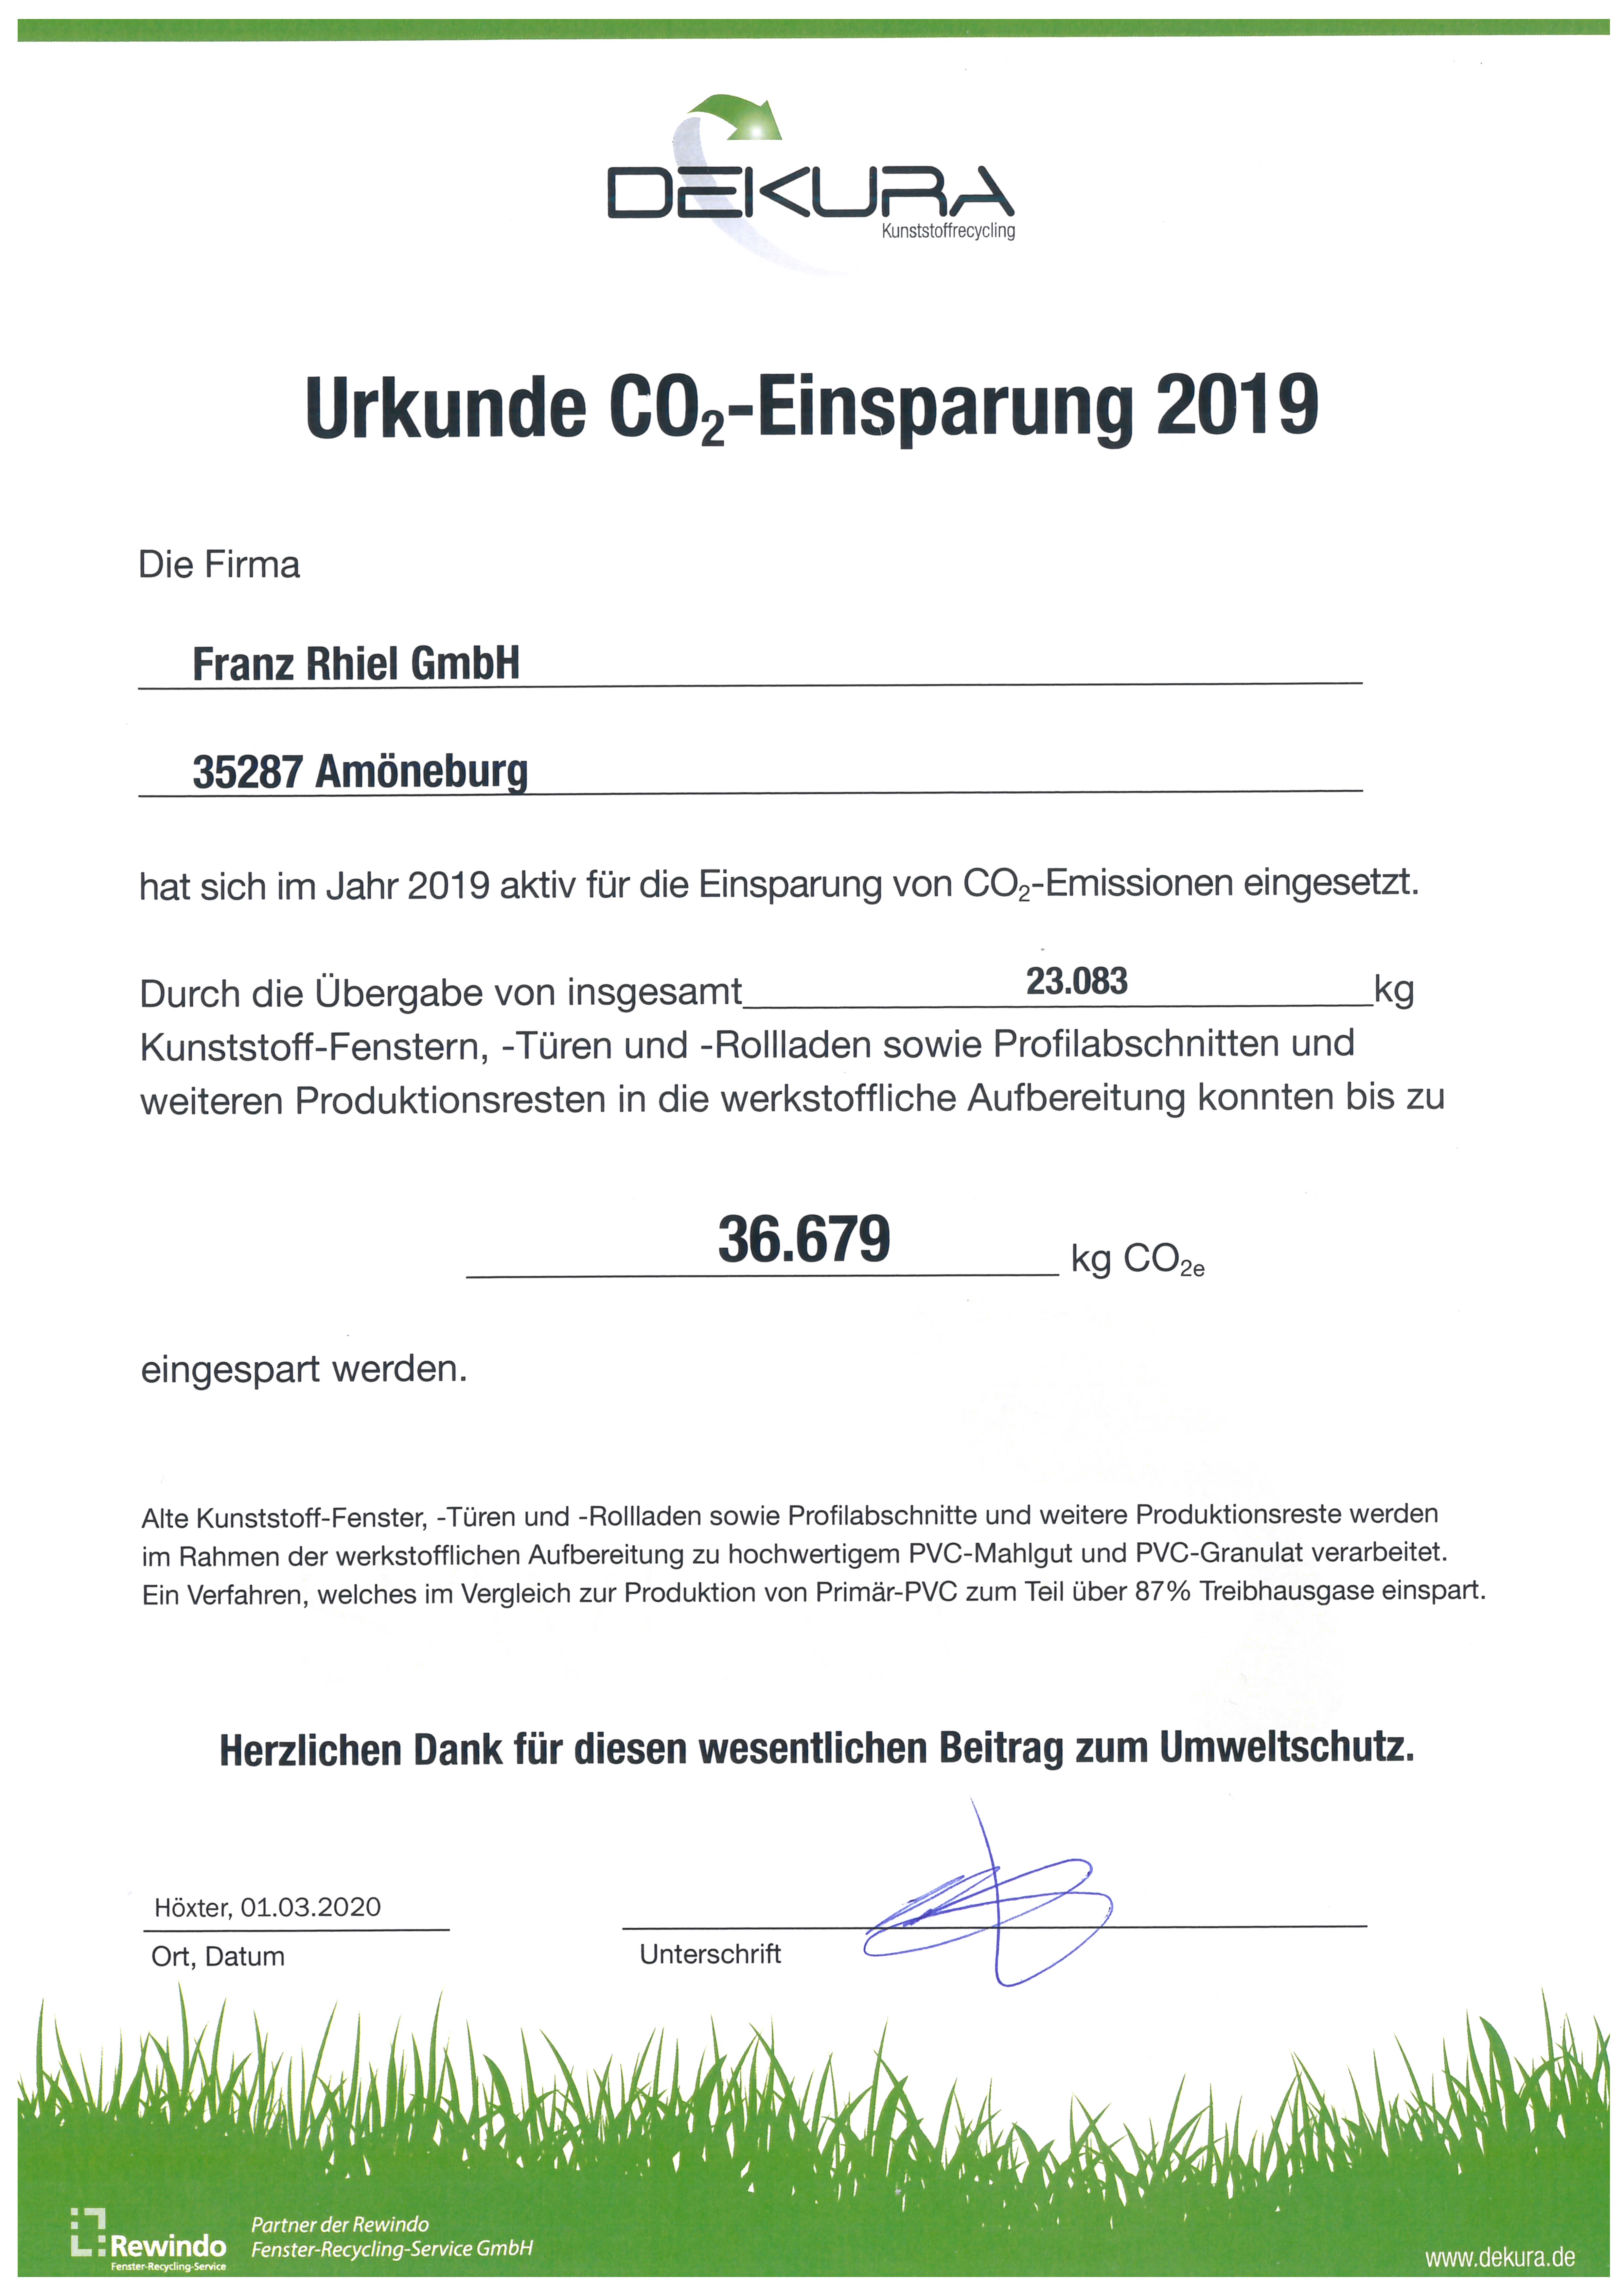 Urkunde Co2-Einsparung 2018